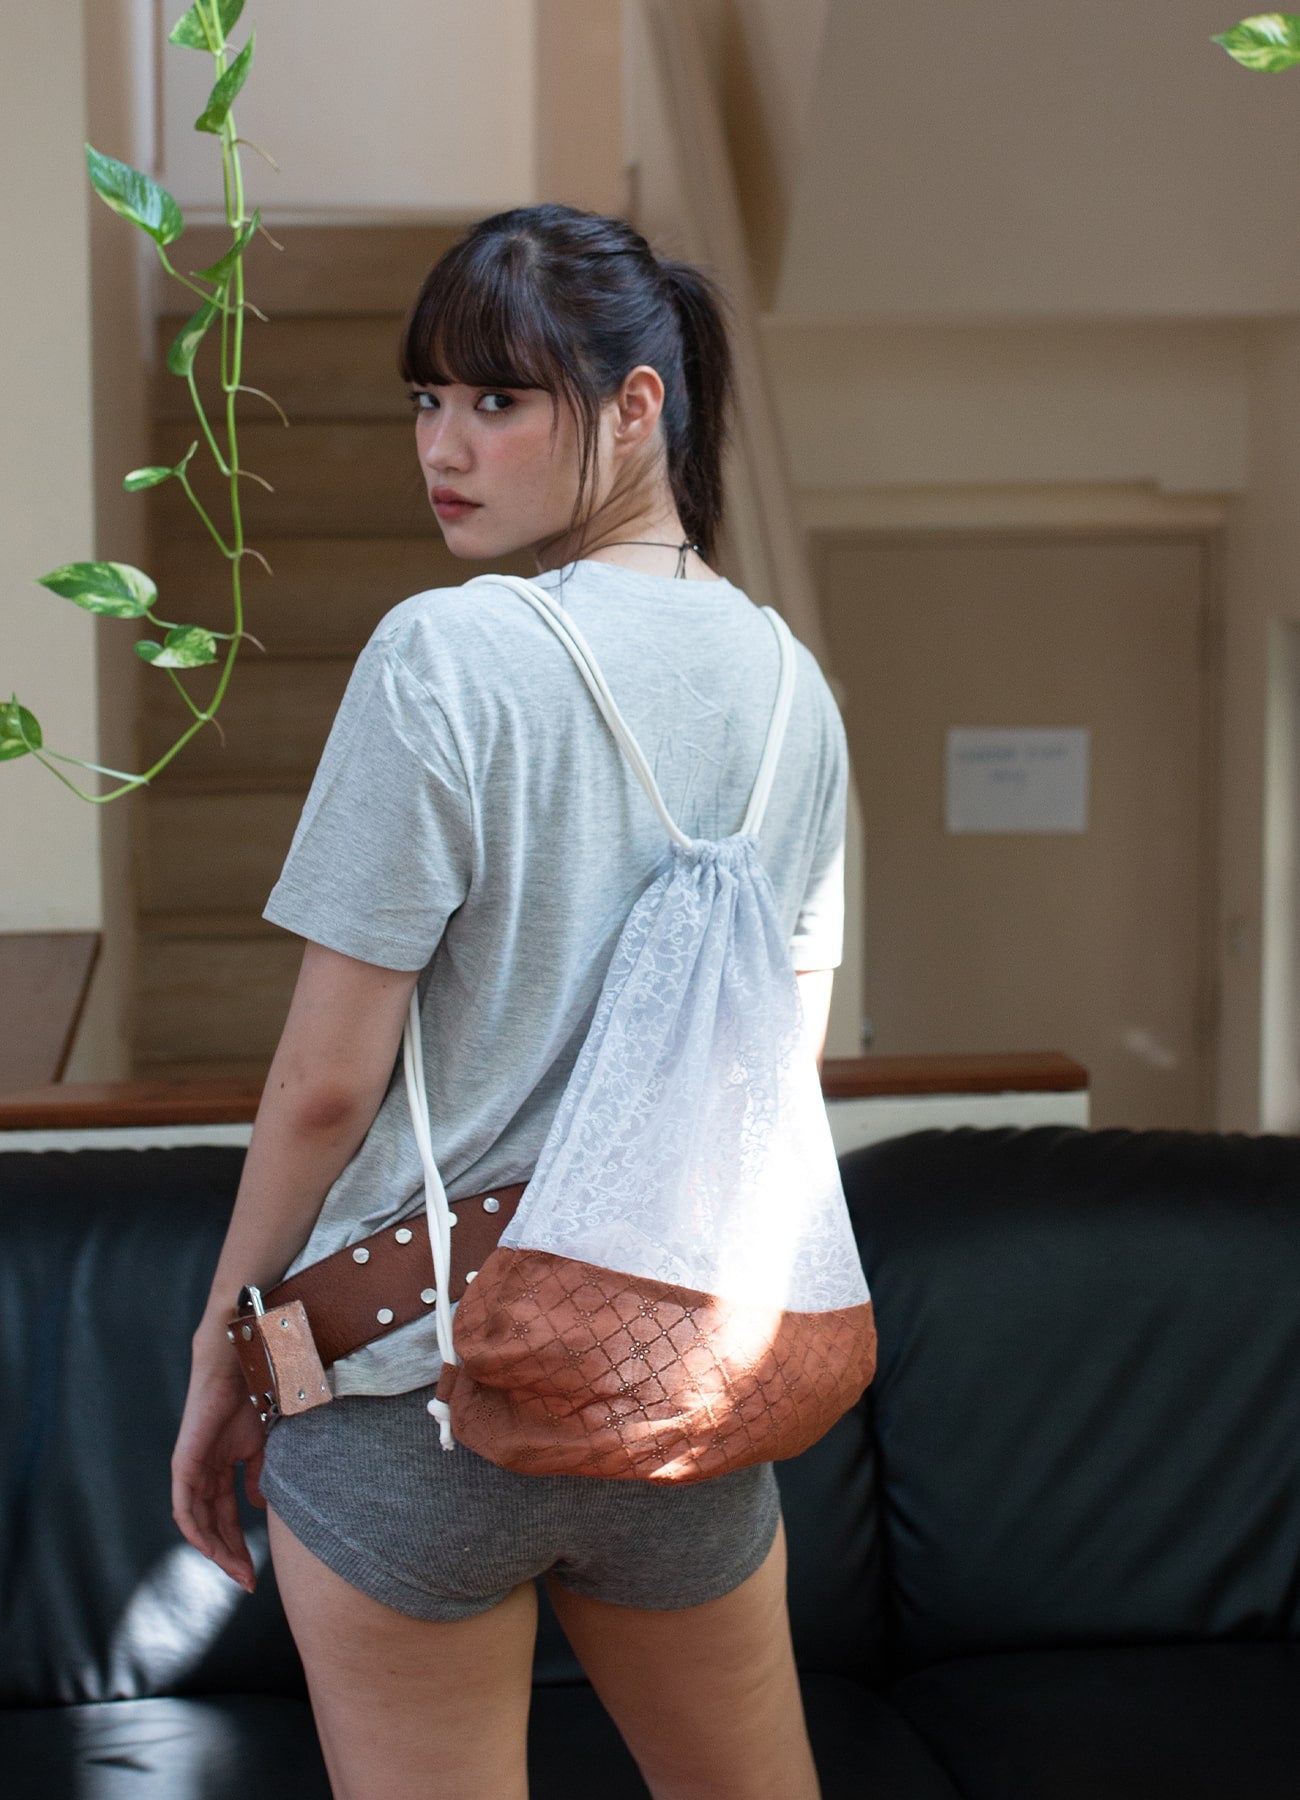 Lace Drawstring Bag - Sora